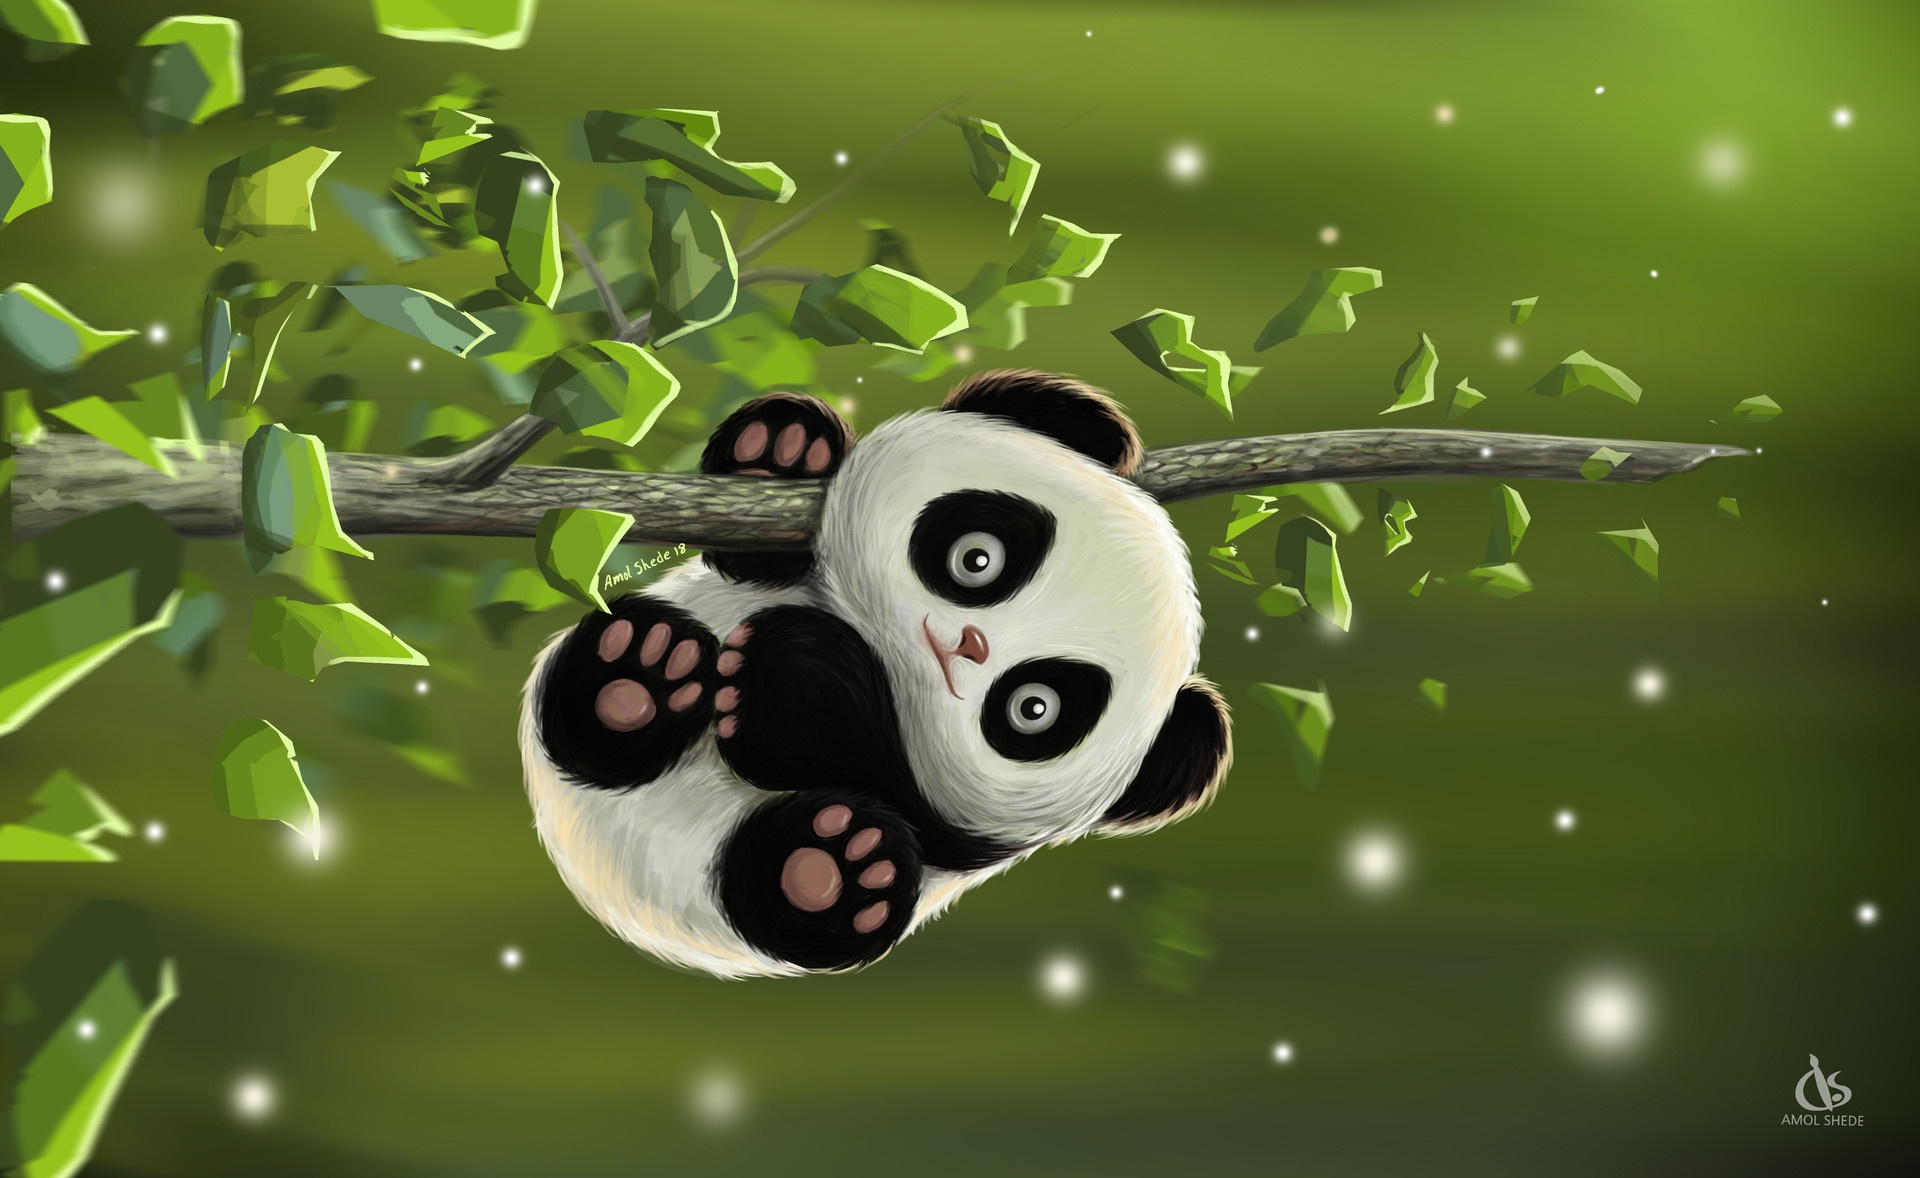 Скачать обои бесплатно Животные, Панда, Милые картинка на рабочий стол ПК